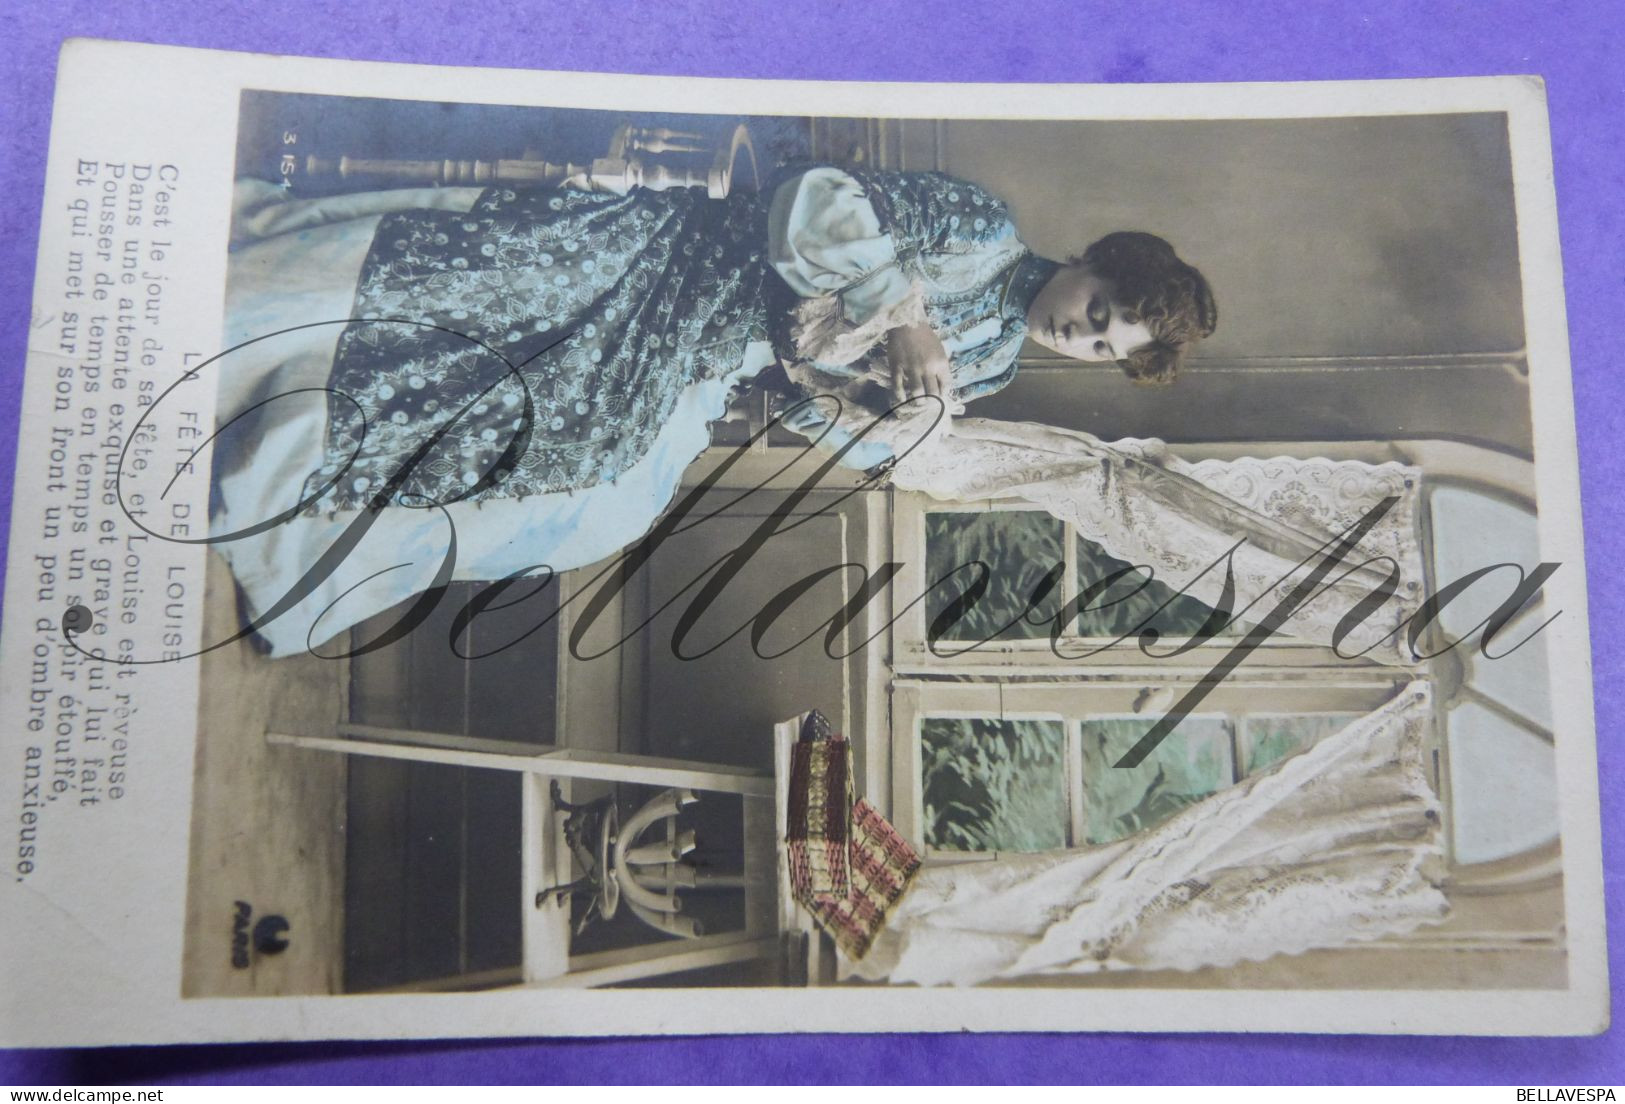 Fantasie gemengd lot  90 x cpa  postkaarten Mode coiffure vintage couture haartooi kapsel